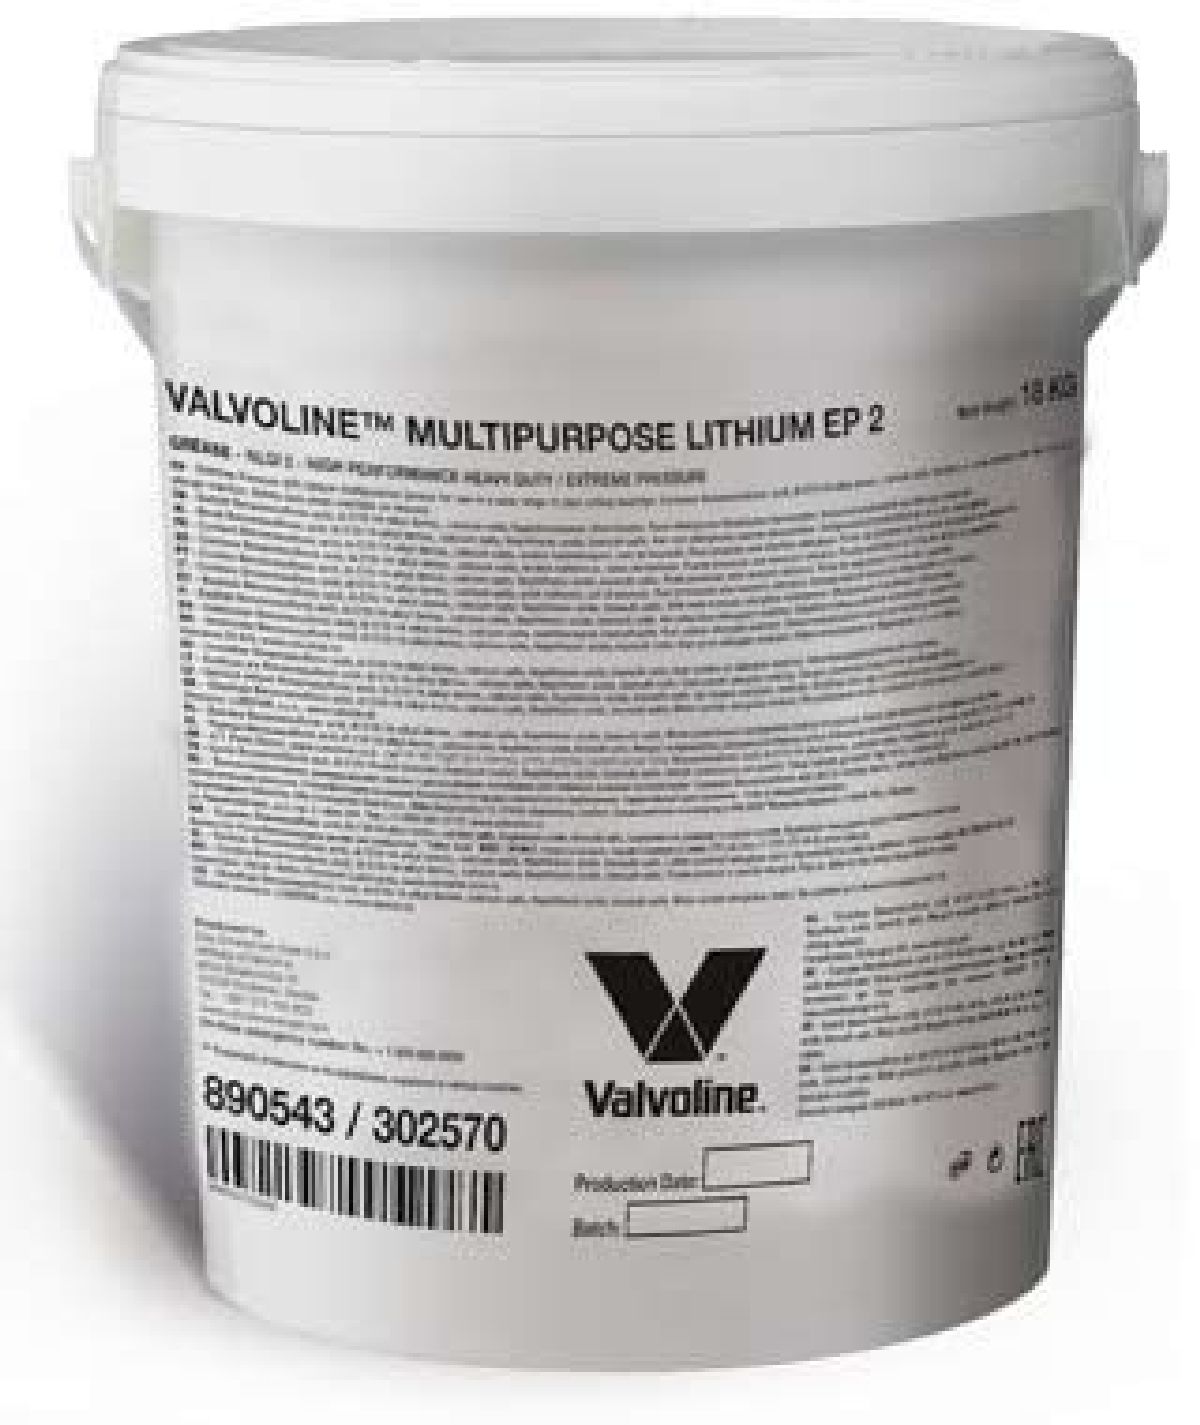 Multipurpose Lithium EP 2